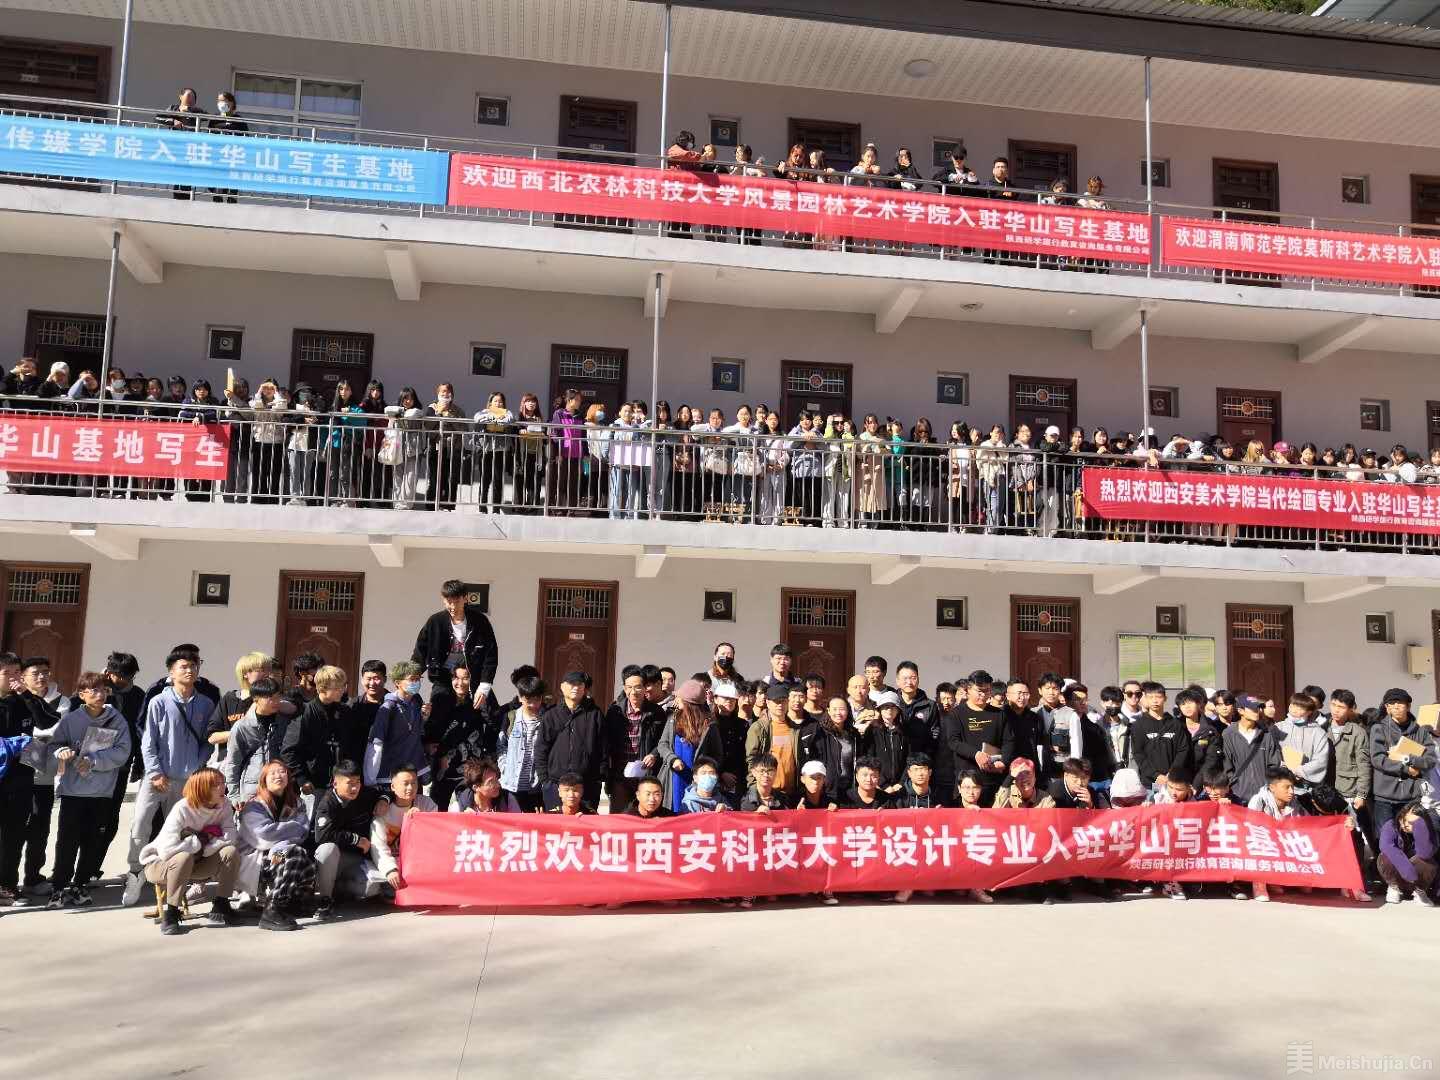 热烈欢迎西安科技大学艺术学院 入驻华山写生基地进行写生